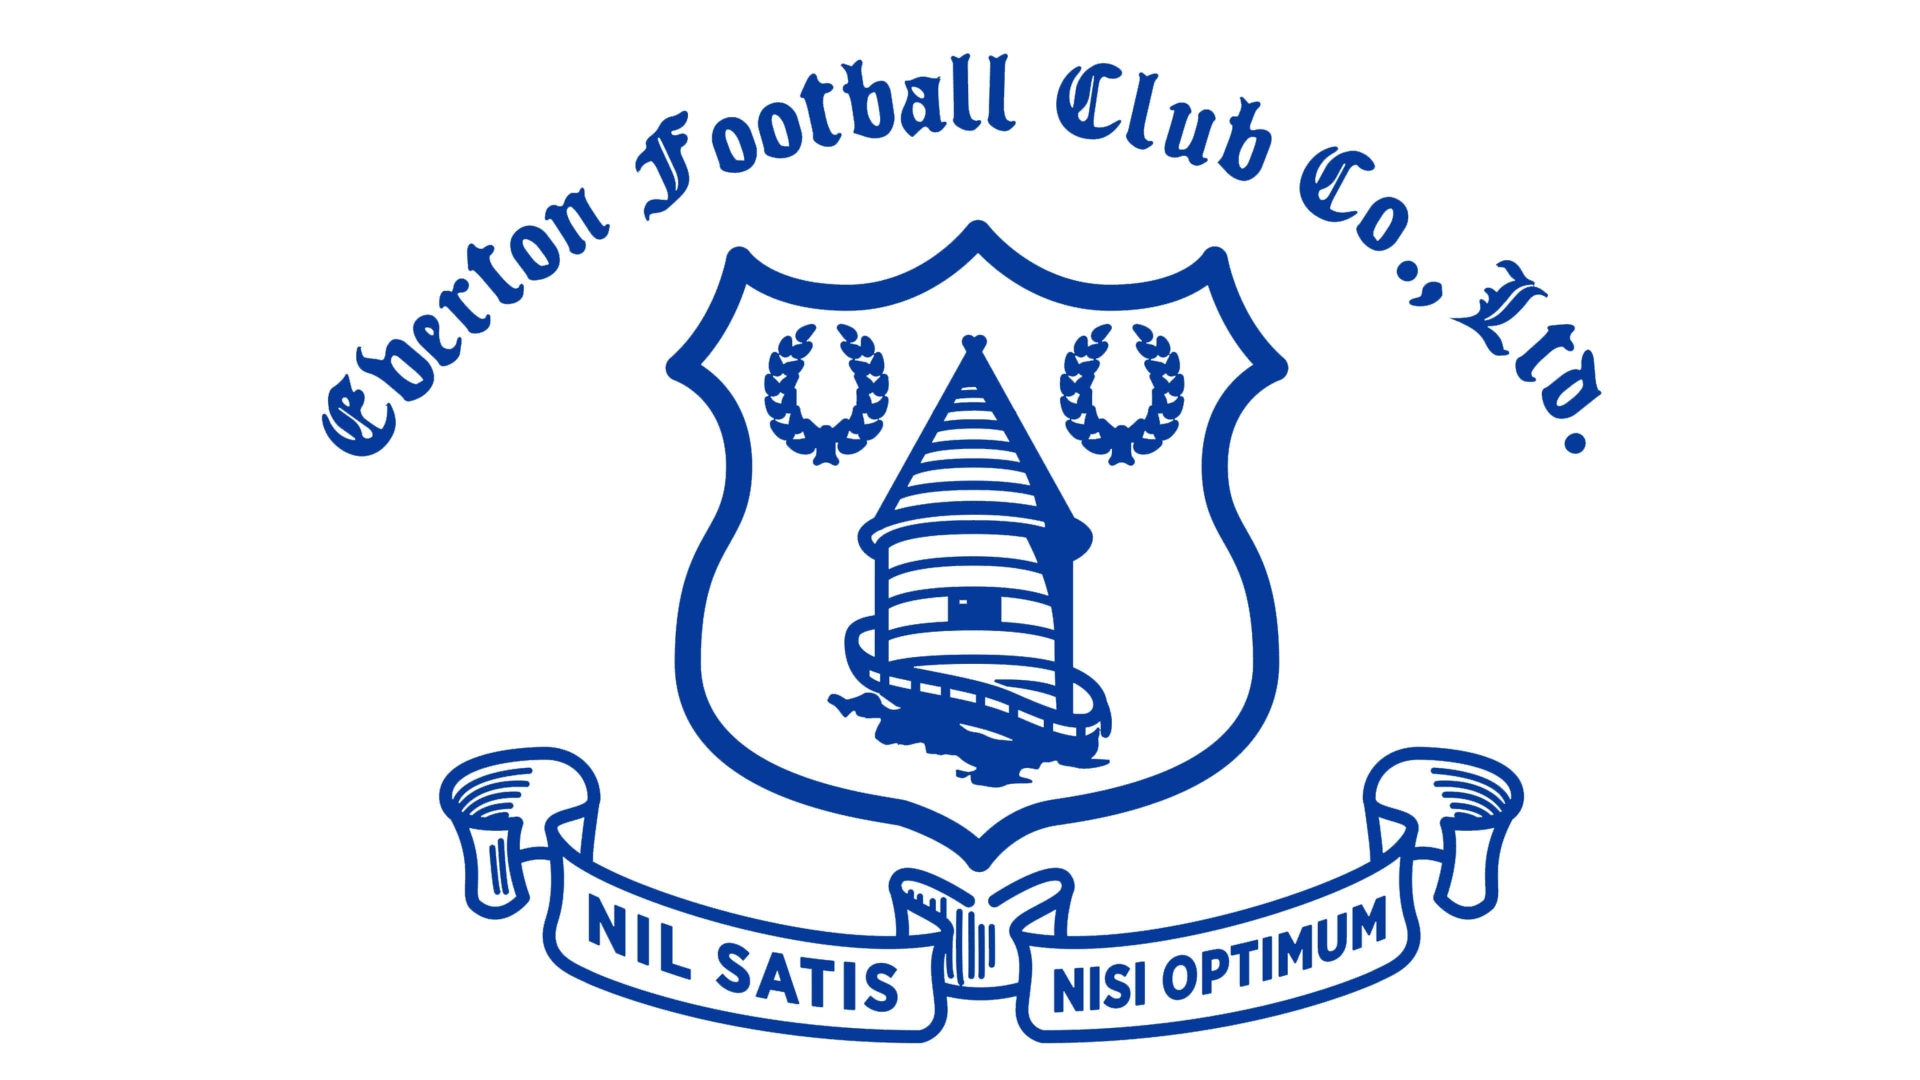 Descarga gratuita de fondo de pantalla para móvil de Fútbol, Logo, Emblema, Deporte, Everton Fc.